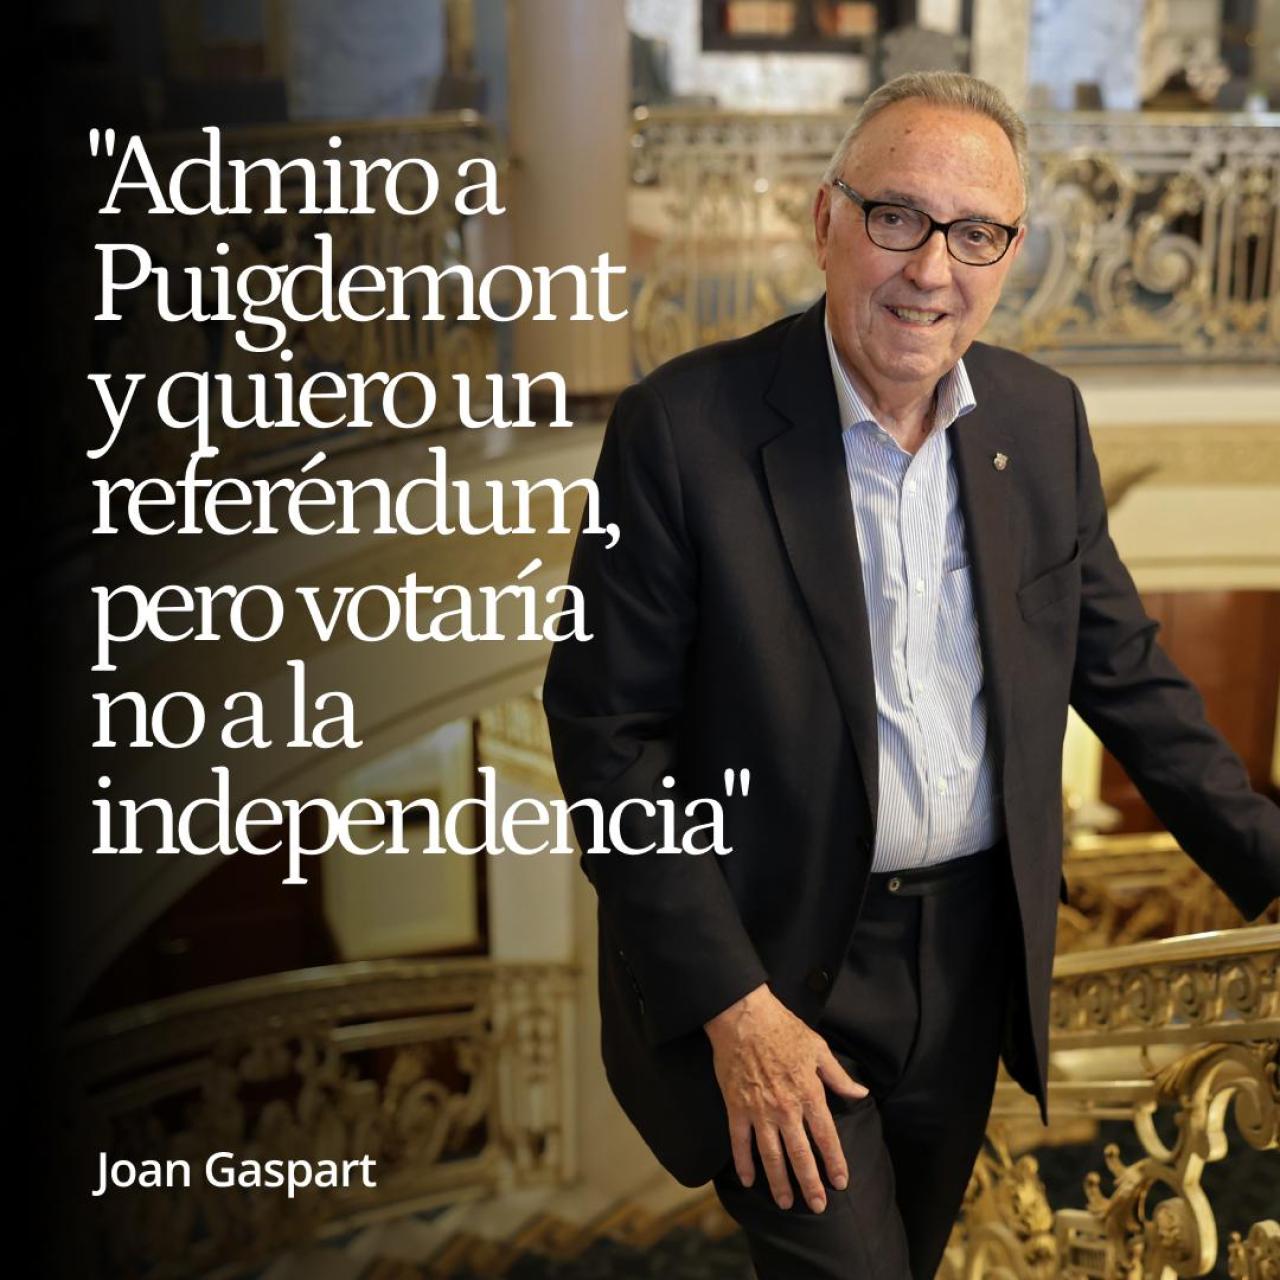 Joan Gaspart: "Admiro a Puigdemont y quiero un referéndum, pero votaría no a la independencia"